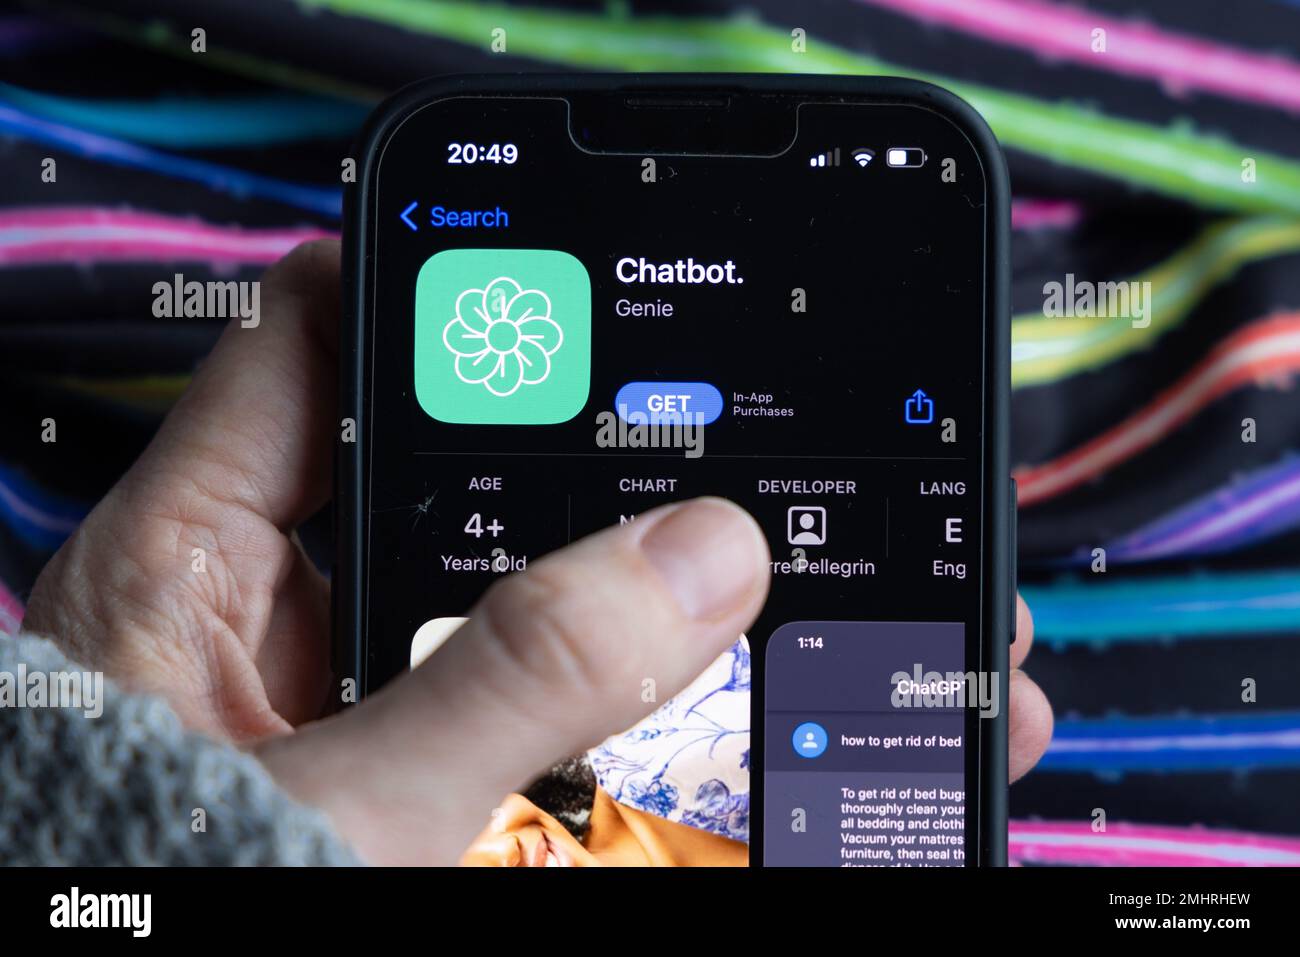 Frauenhand hält ein iPhone mit appstore, ChatGPT und Chat bot Apps, Zeit für künstliche Intelligenz. Chatbot Genie 01.01.2023 Amsterdam, Niederlande Stockfoto